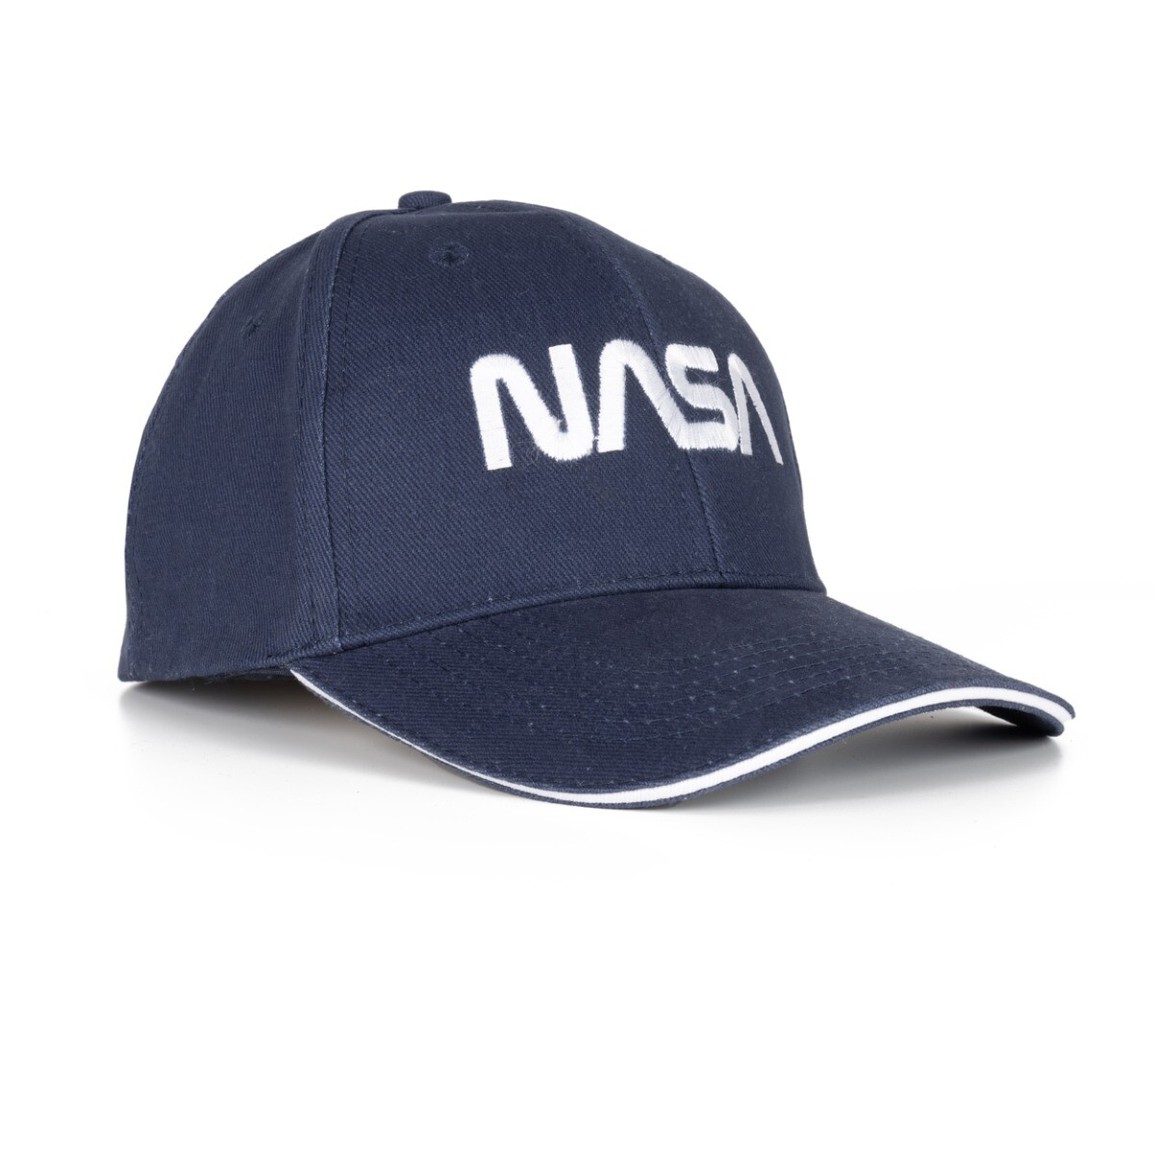 NASA Cap New in